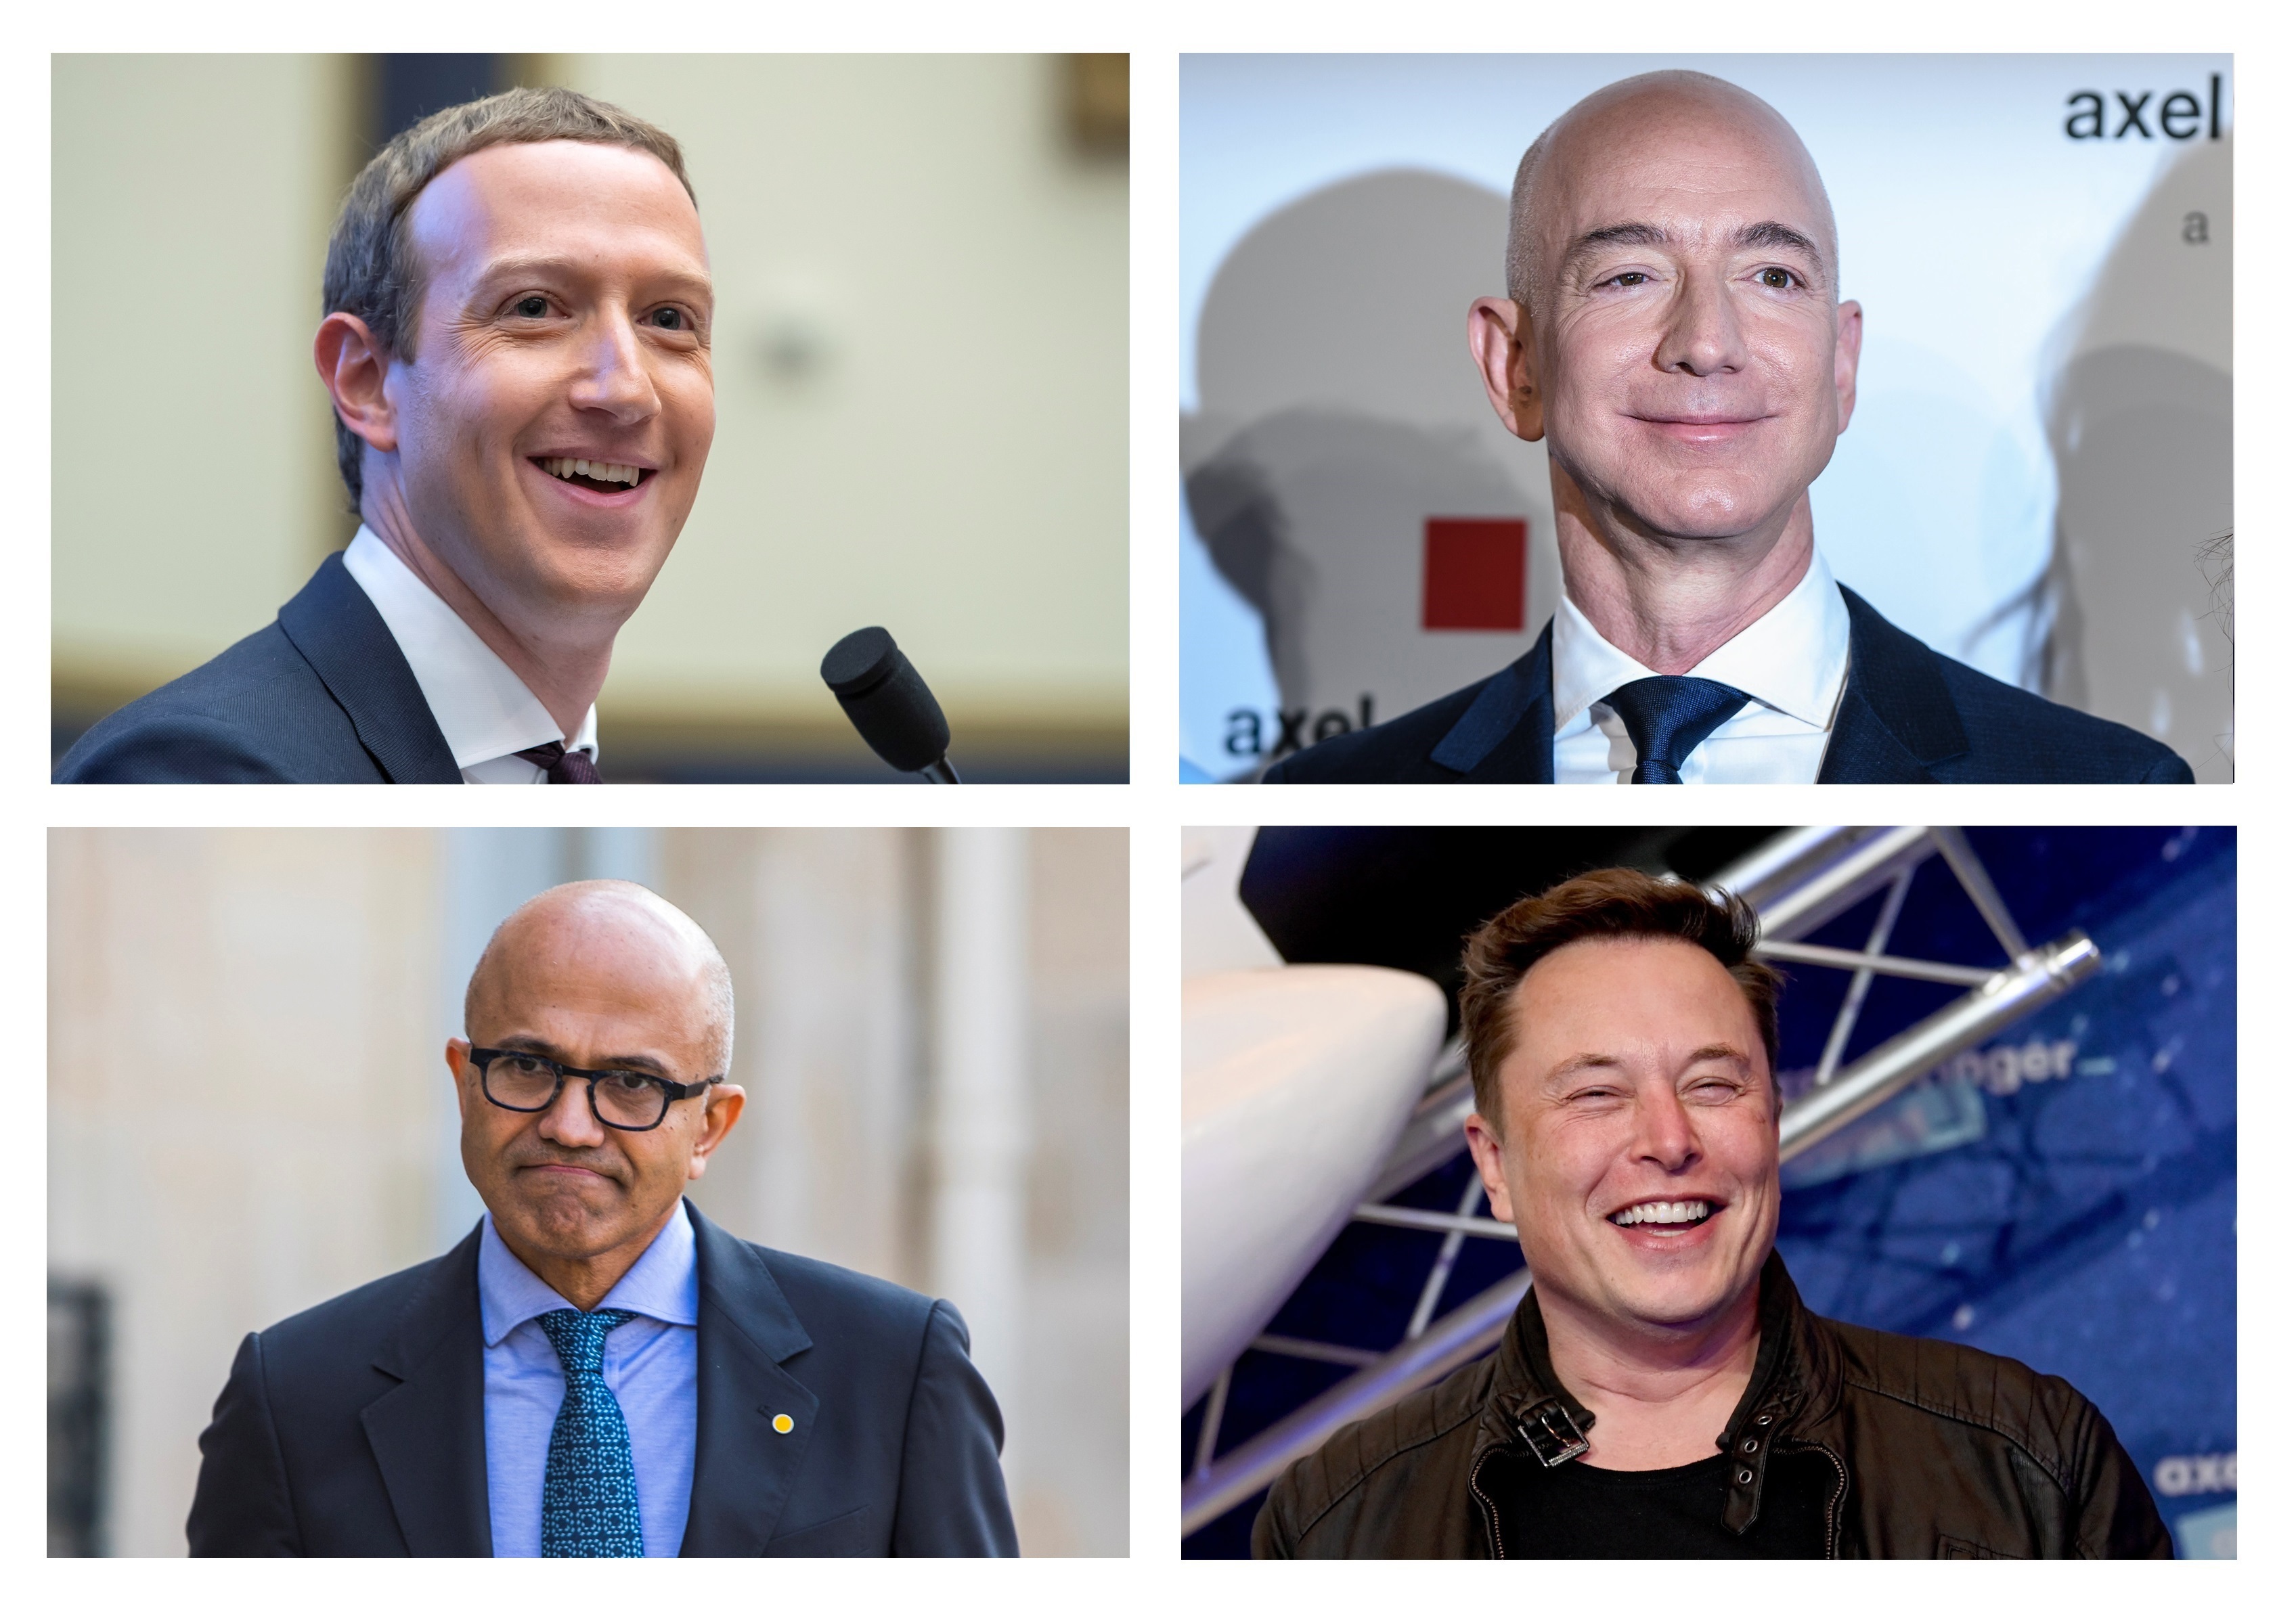 Cuáles fueron las carreras que estudiaron Jeff Bezos, Bill Gates, Mark Zuckerberg y otros líderes de la tecnología